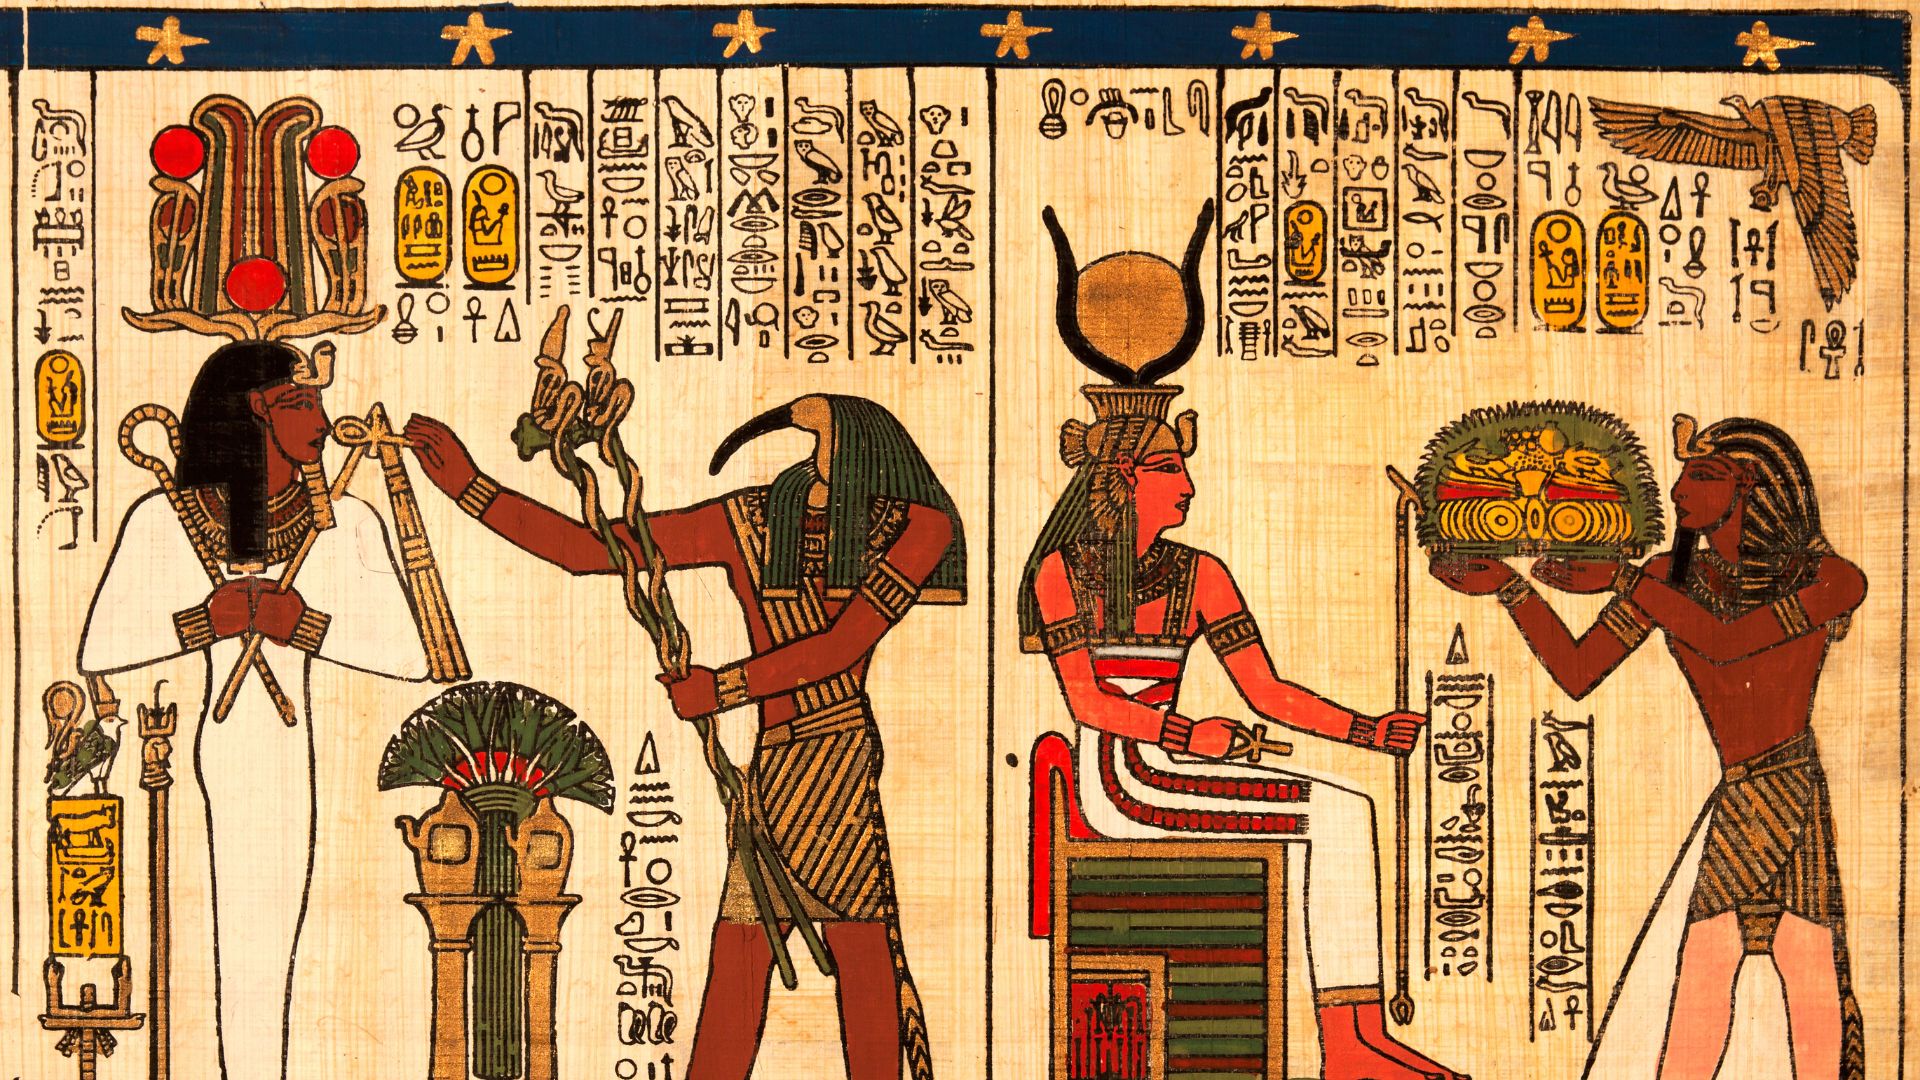 Le temple où les femmes égyptiennes ont dessiné ceci